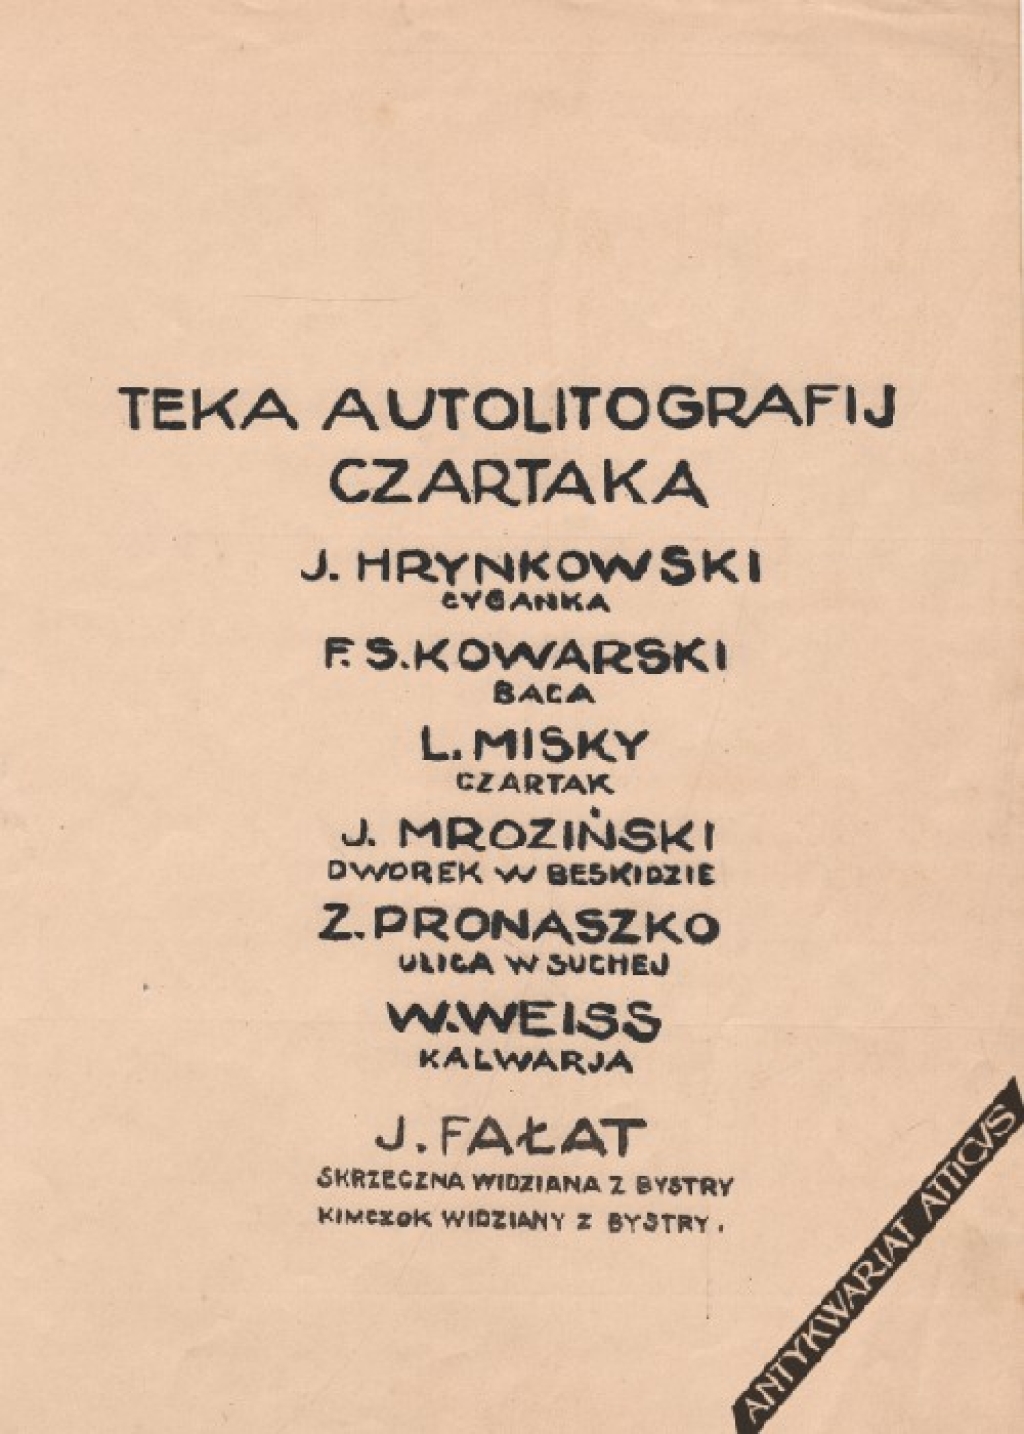 Teka autolitografij Czartaka  [Hrynkowski, Misky, Mroziński, Pronaszko, Weis, Fałat]